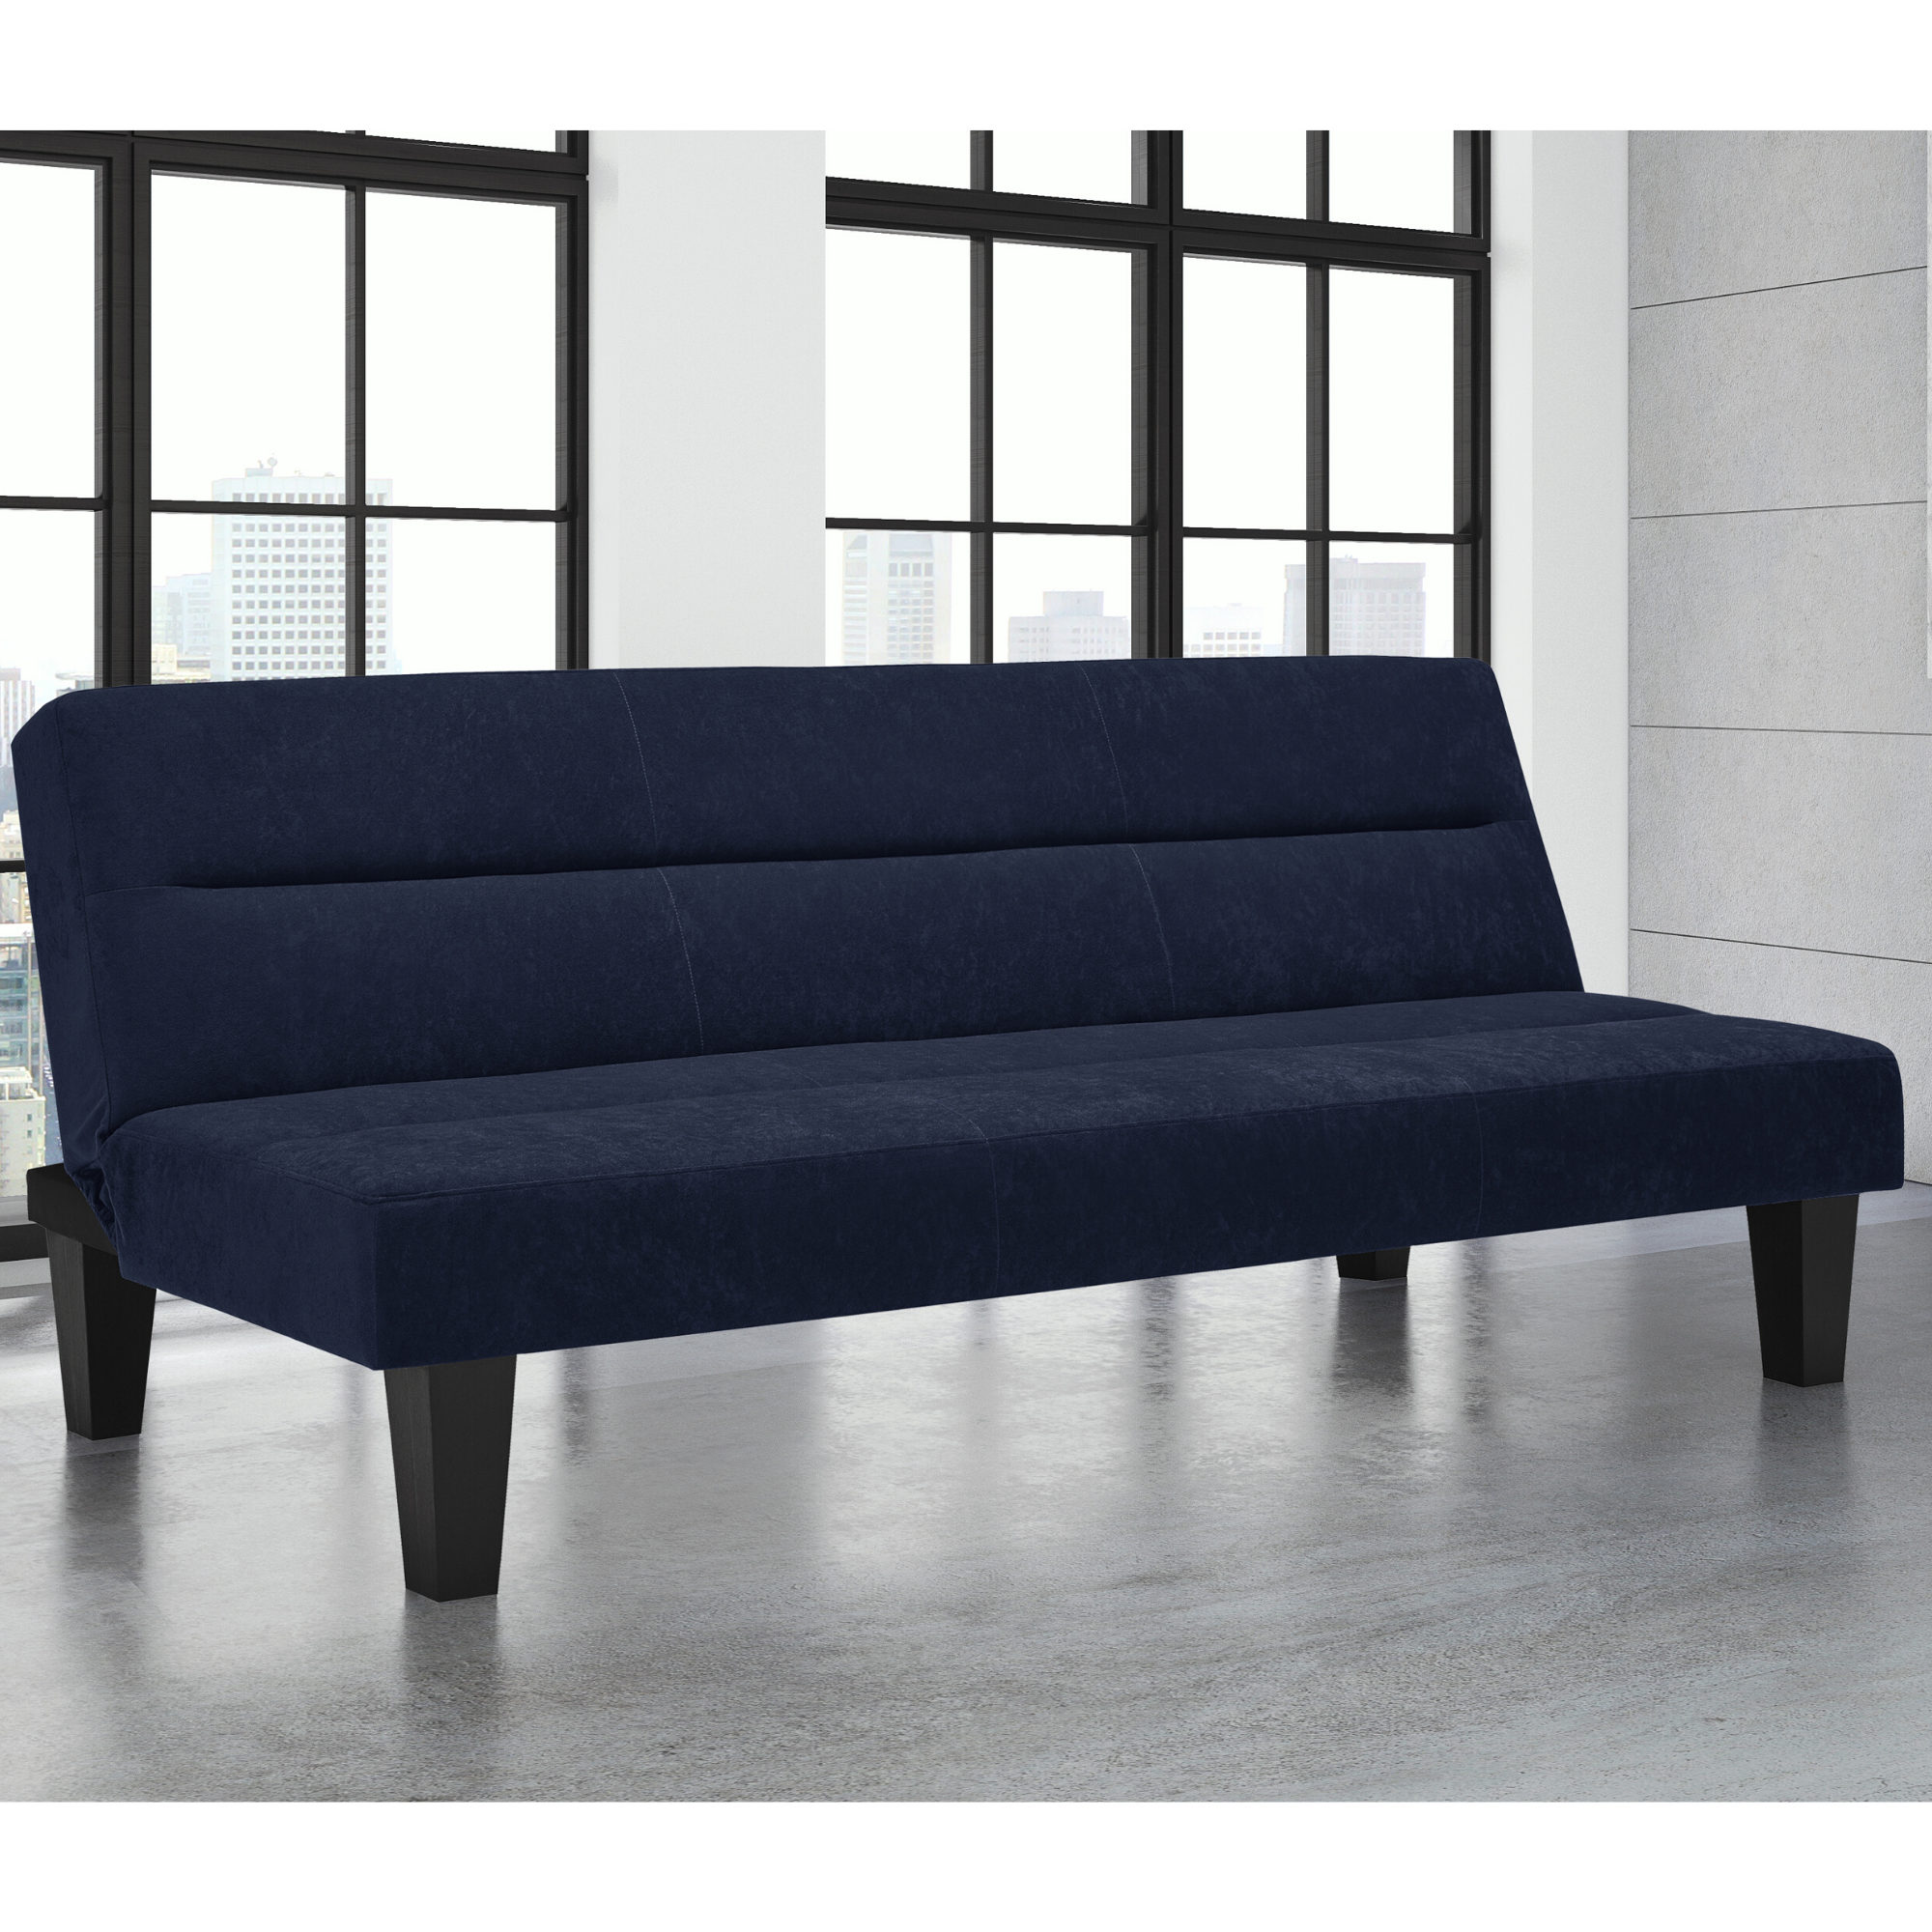 Kebo Velvet Sofa Bed In Blue With Black Wooden Legs